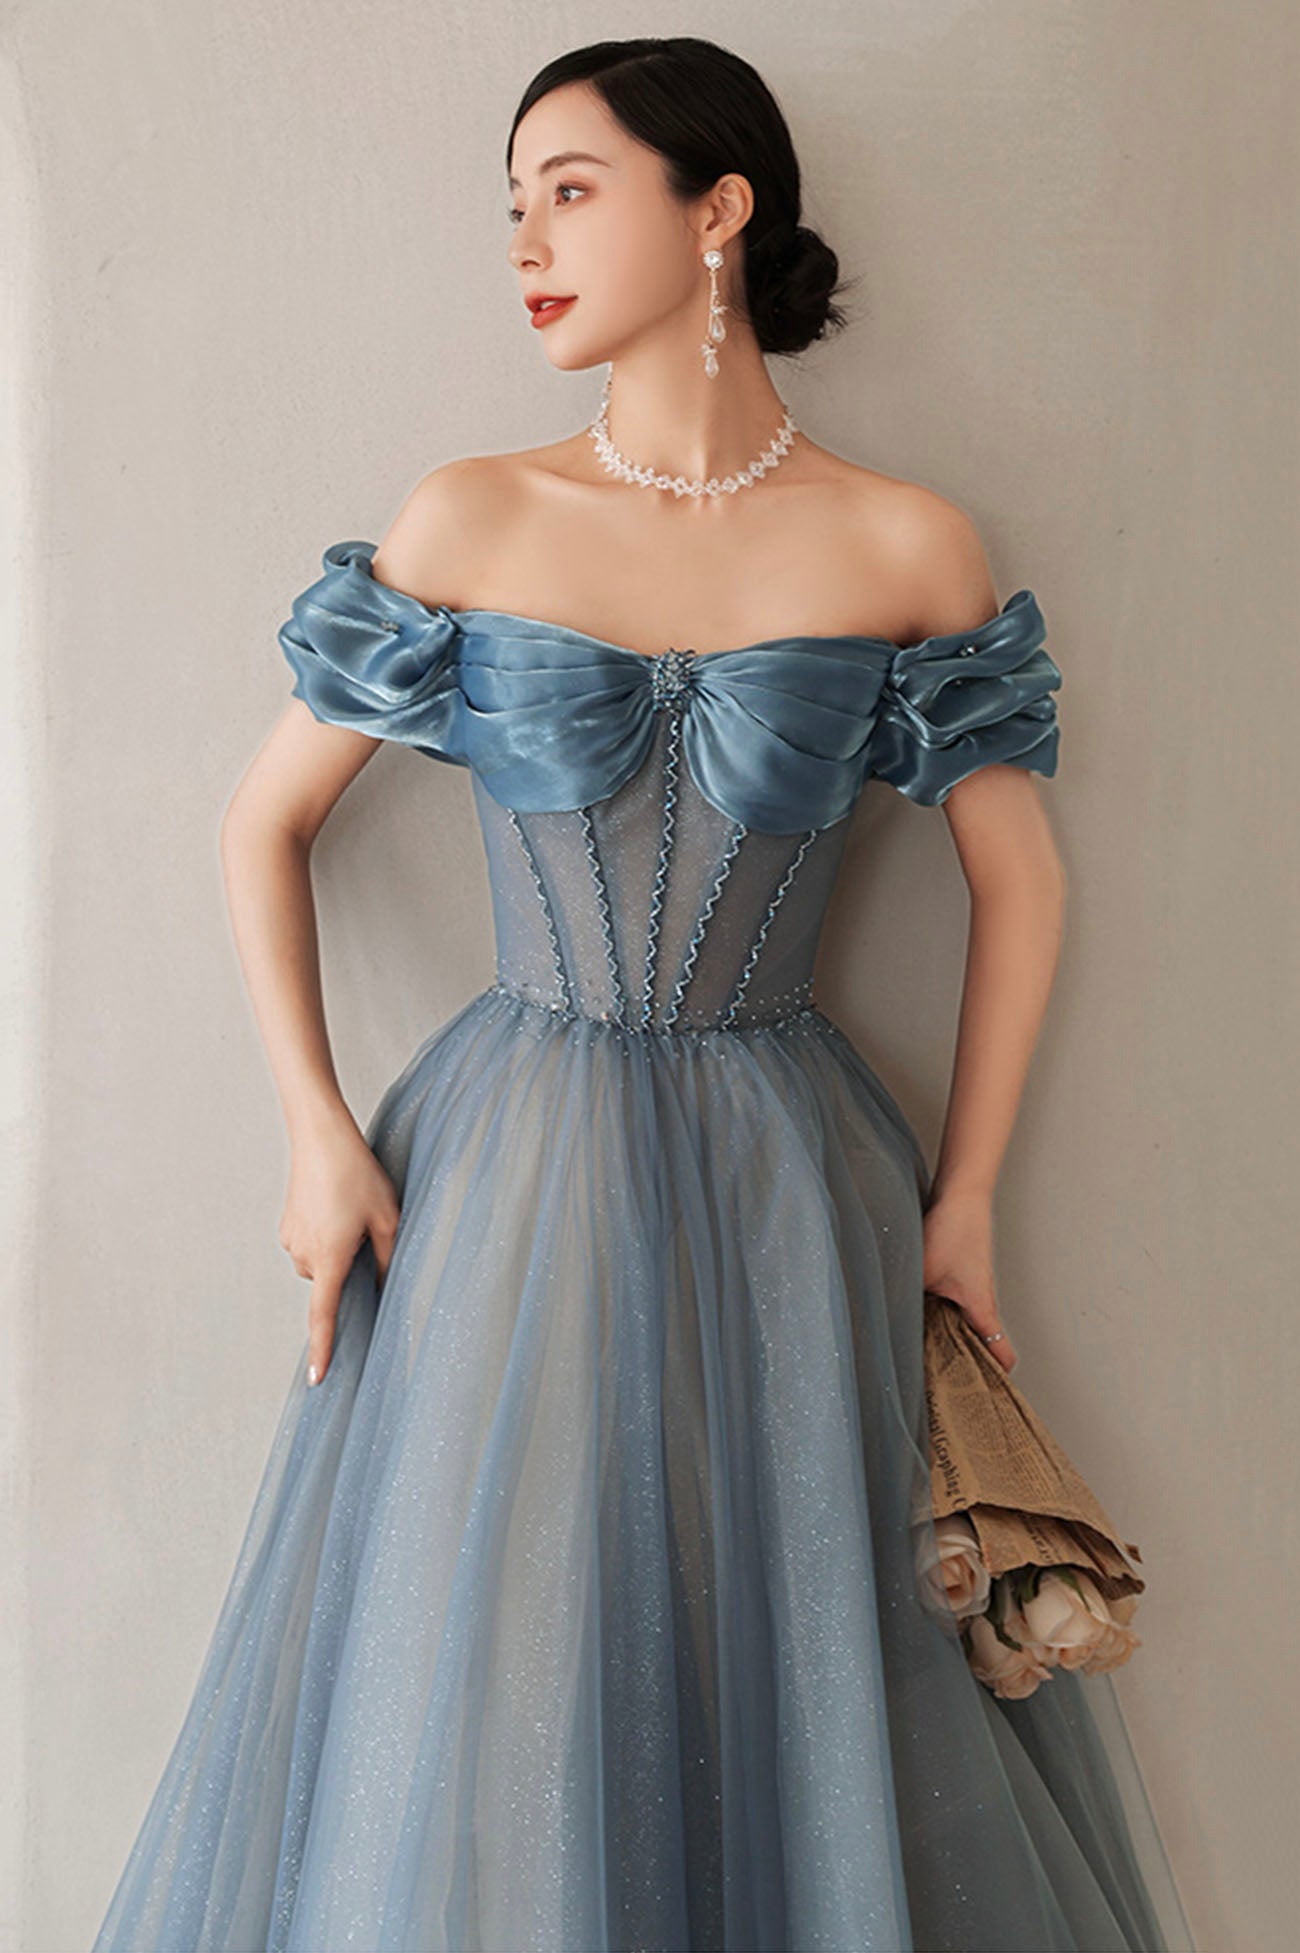 Blue Tulle Long A-Line Prom Dress, Elegant Off the Shoulder Formal Evening Dress